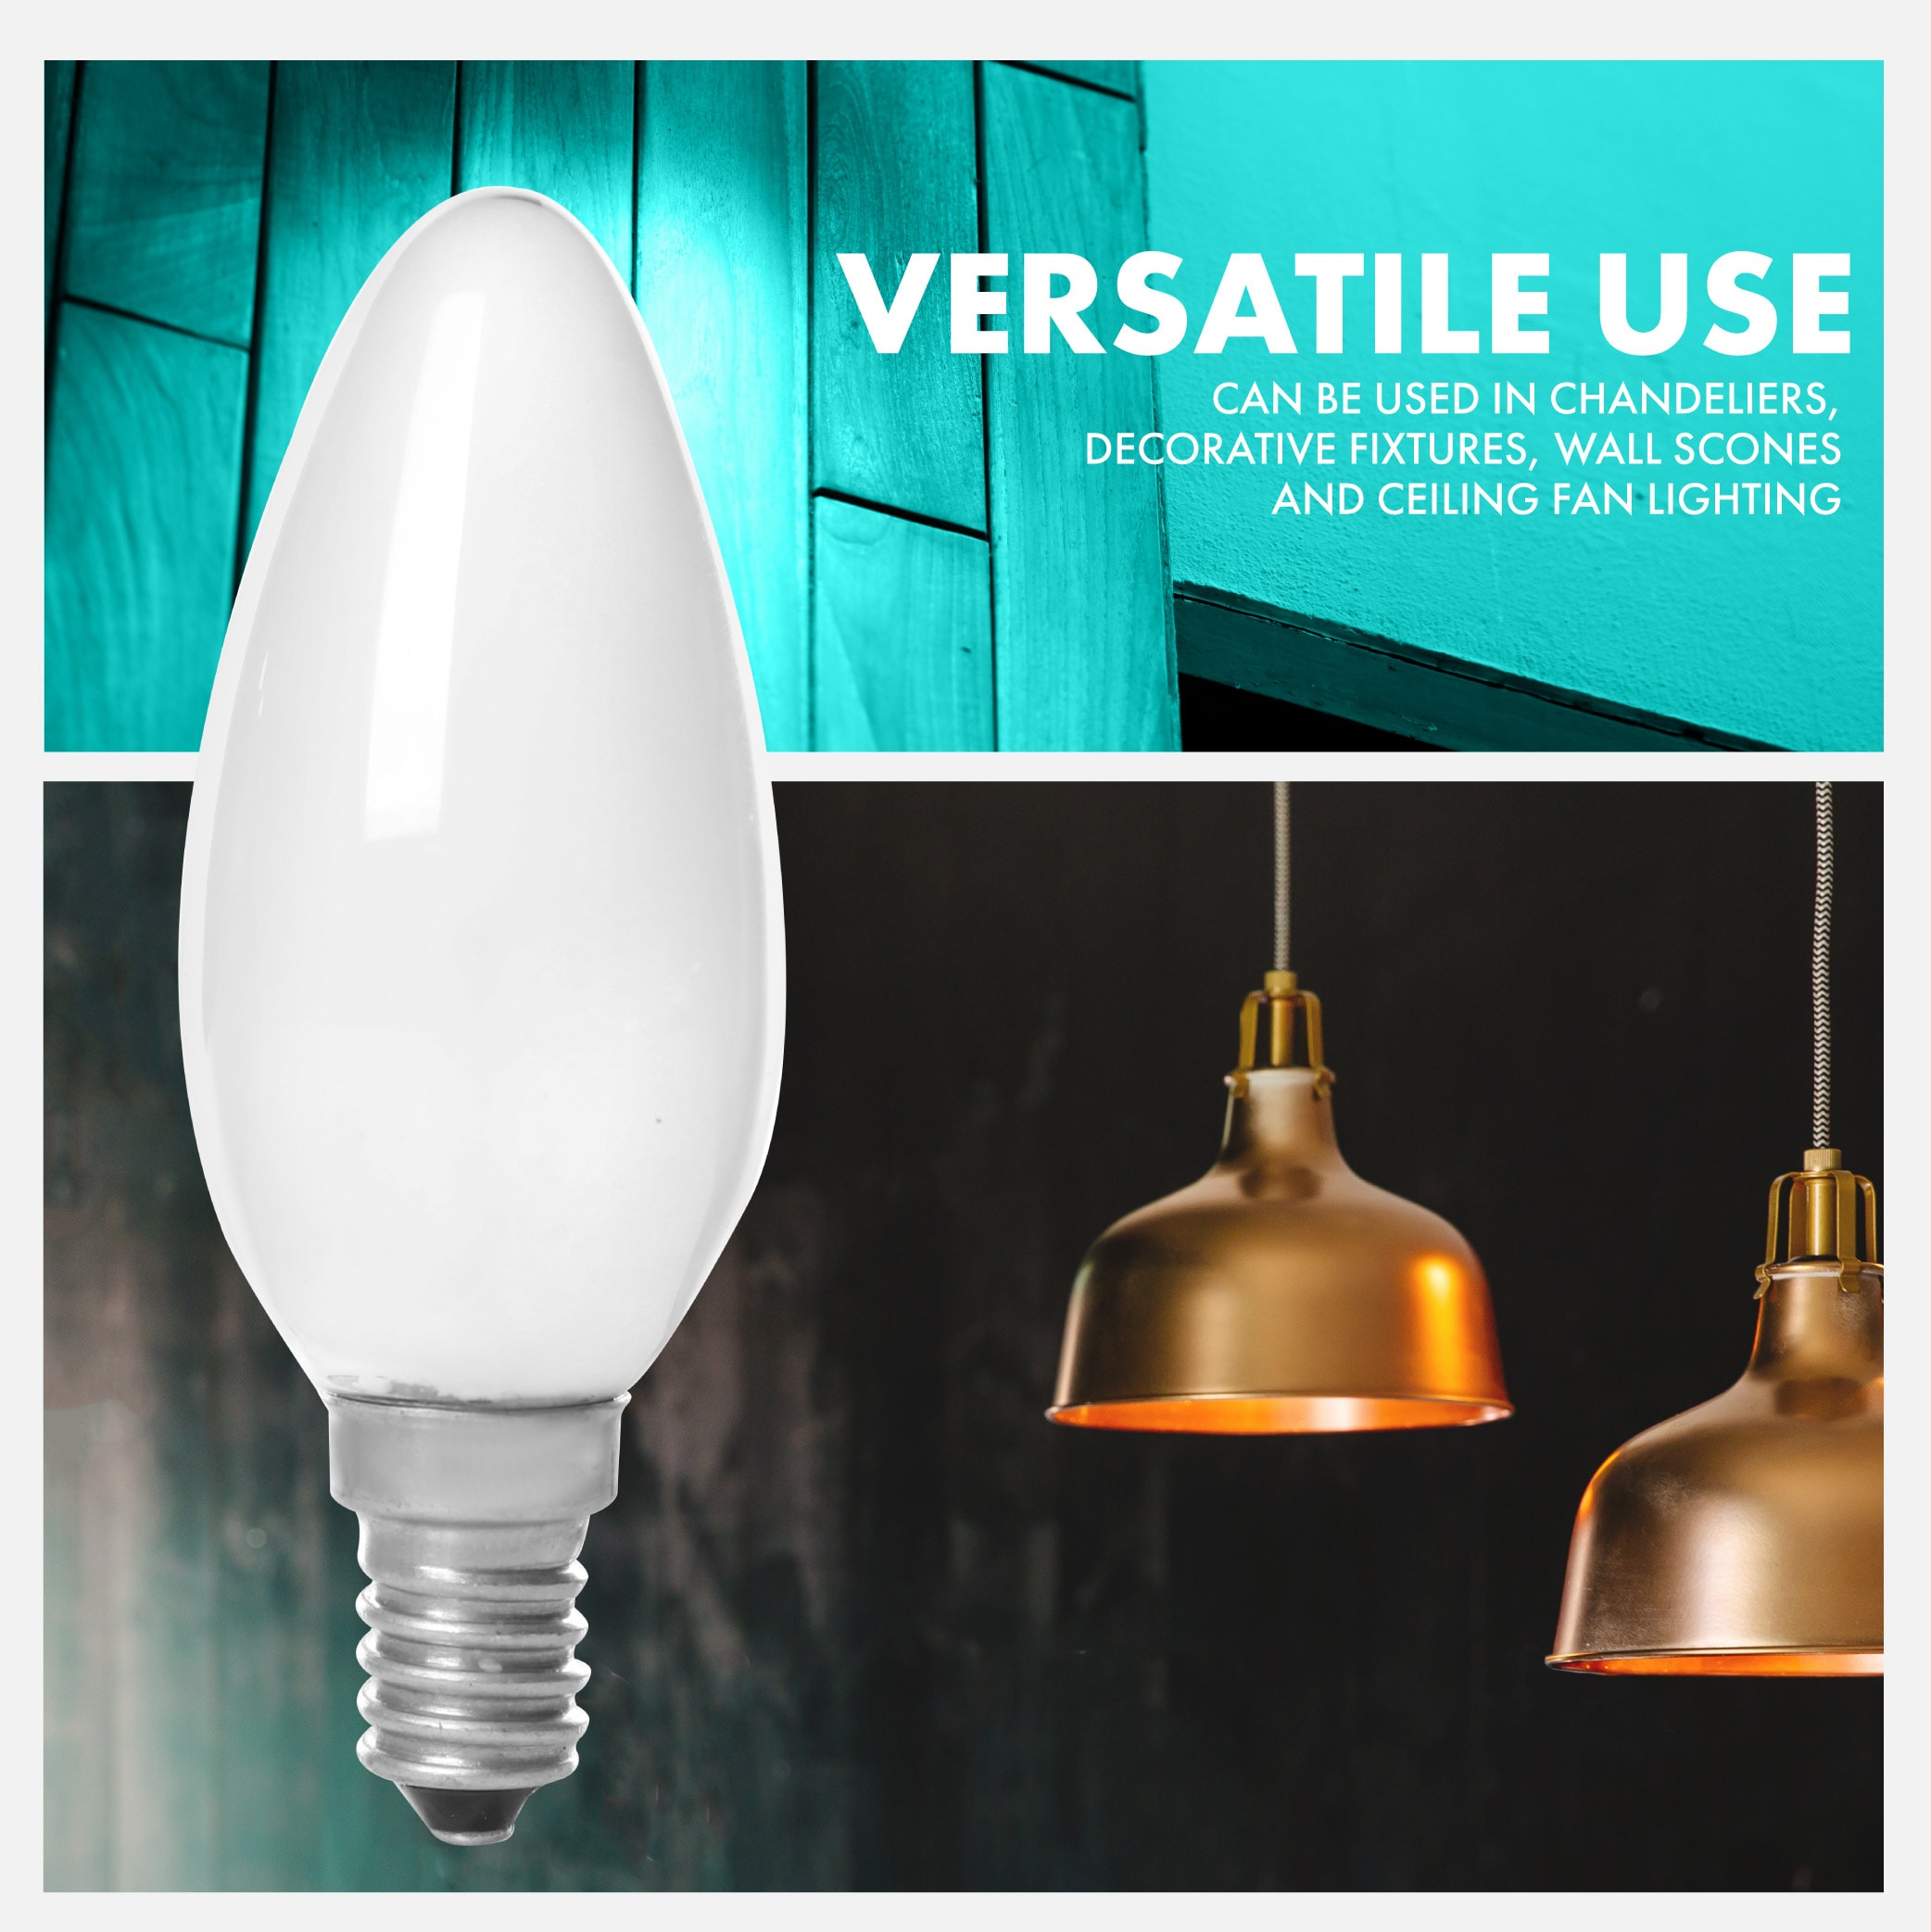 GE LED Light Bulb, T8, Warm White, Frosted, 350 Lumens, 3.5 Watt